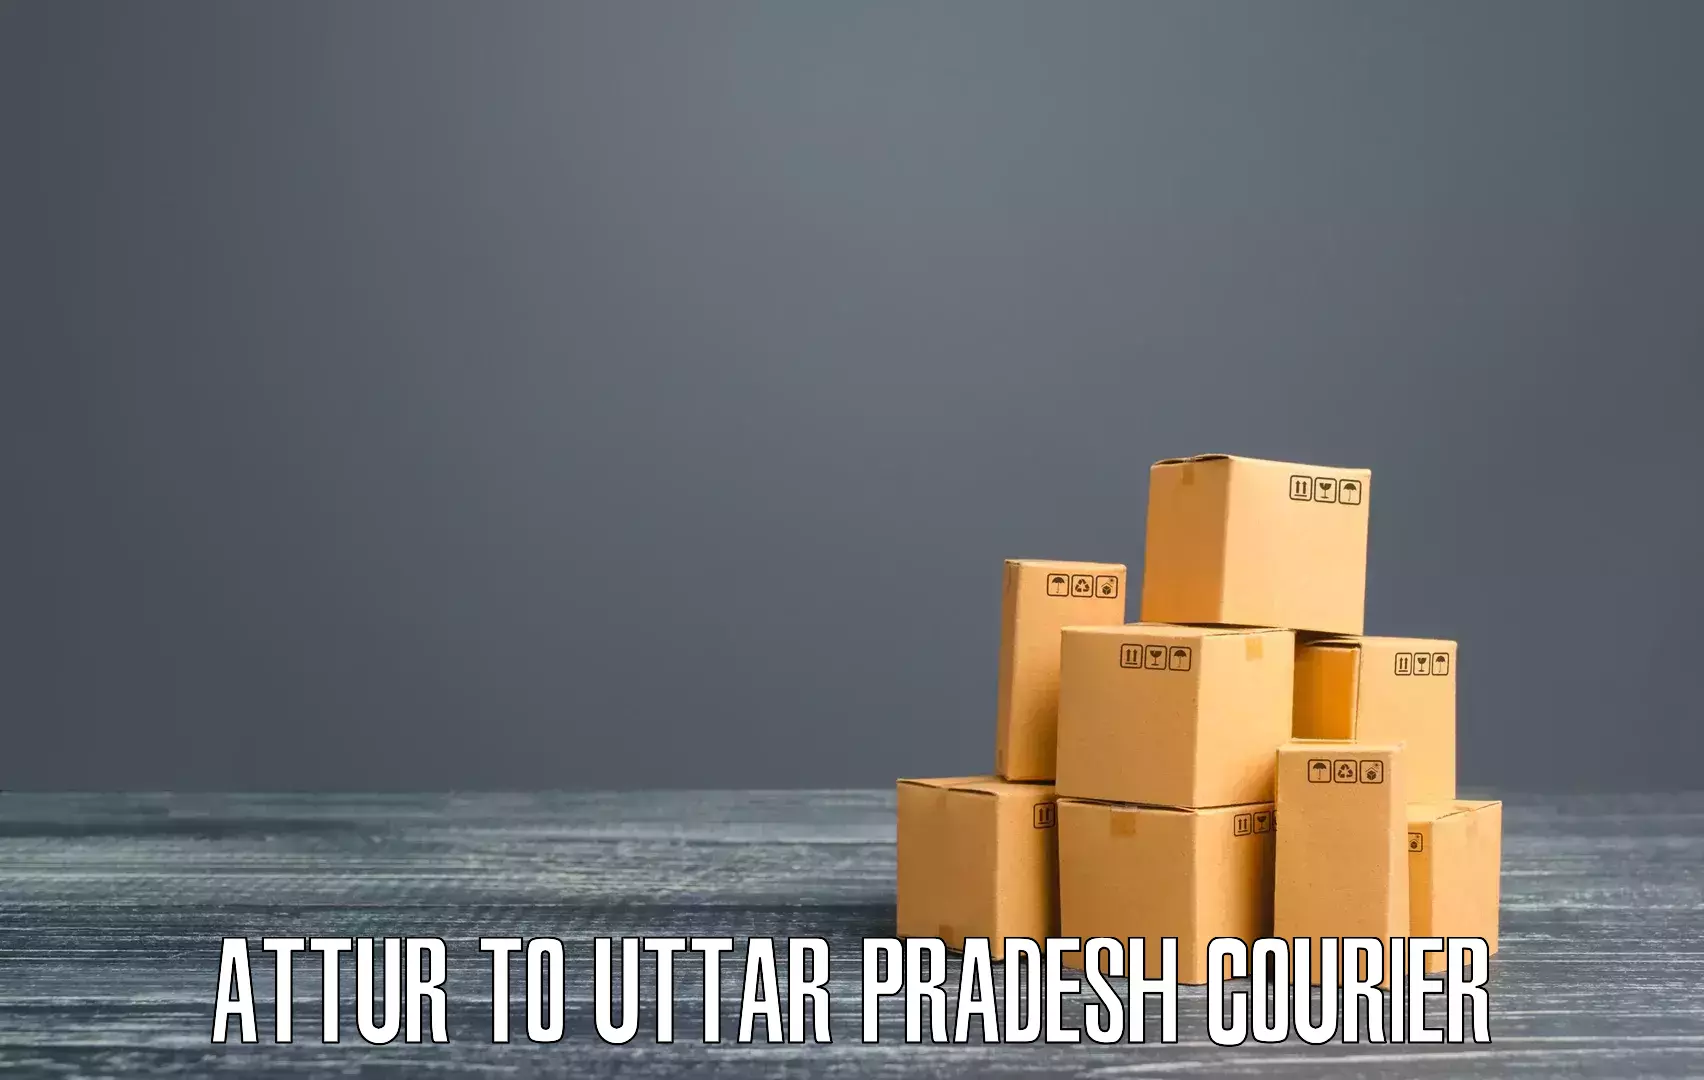 Advanced courier platforms Attur to Uttar Pradesh